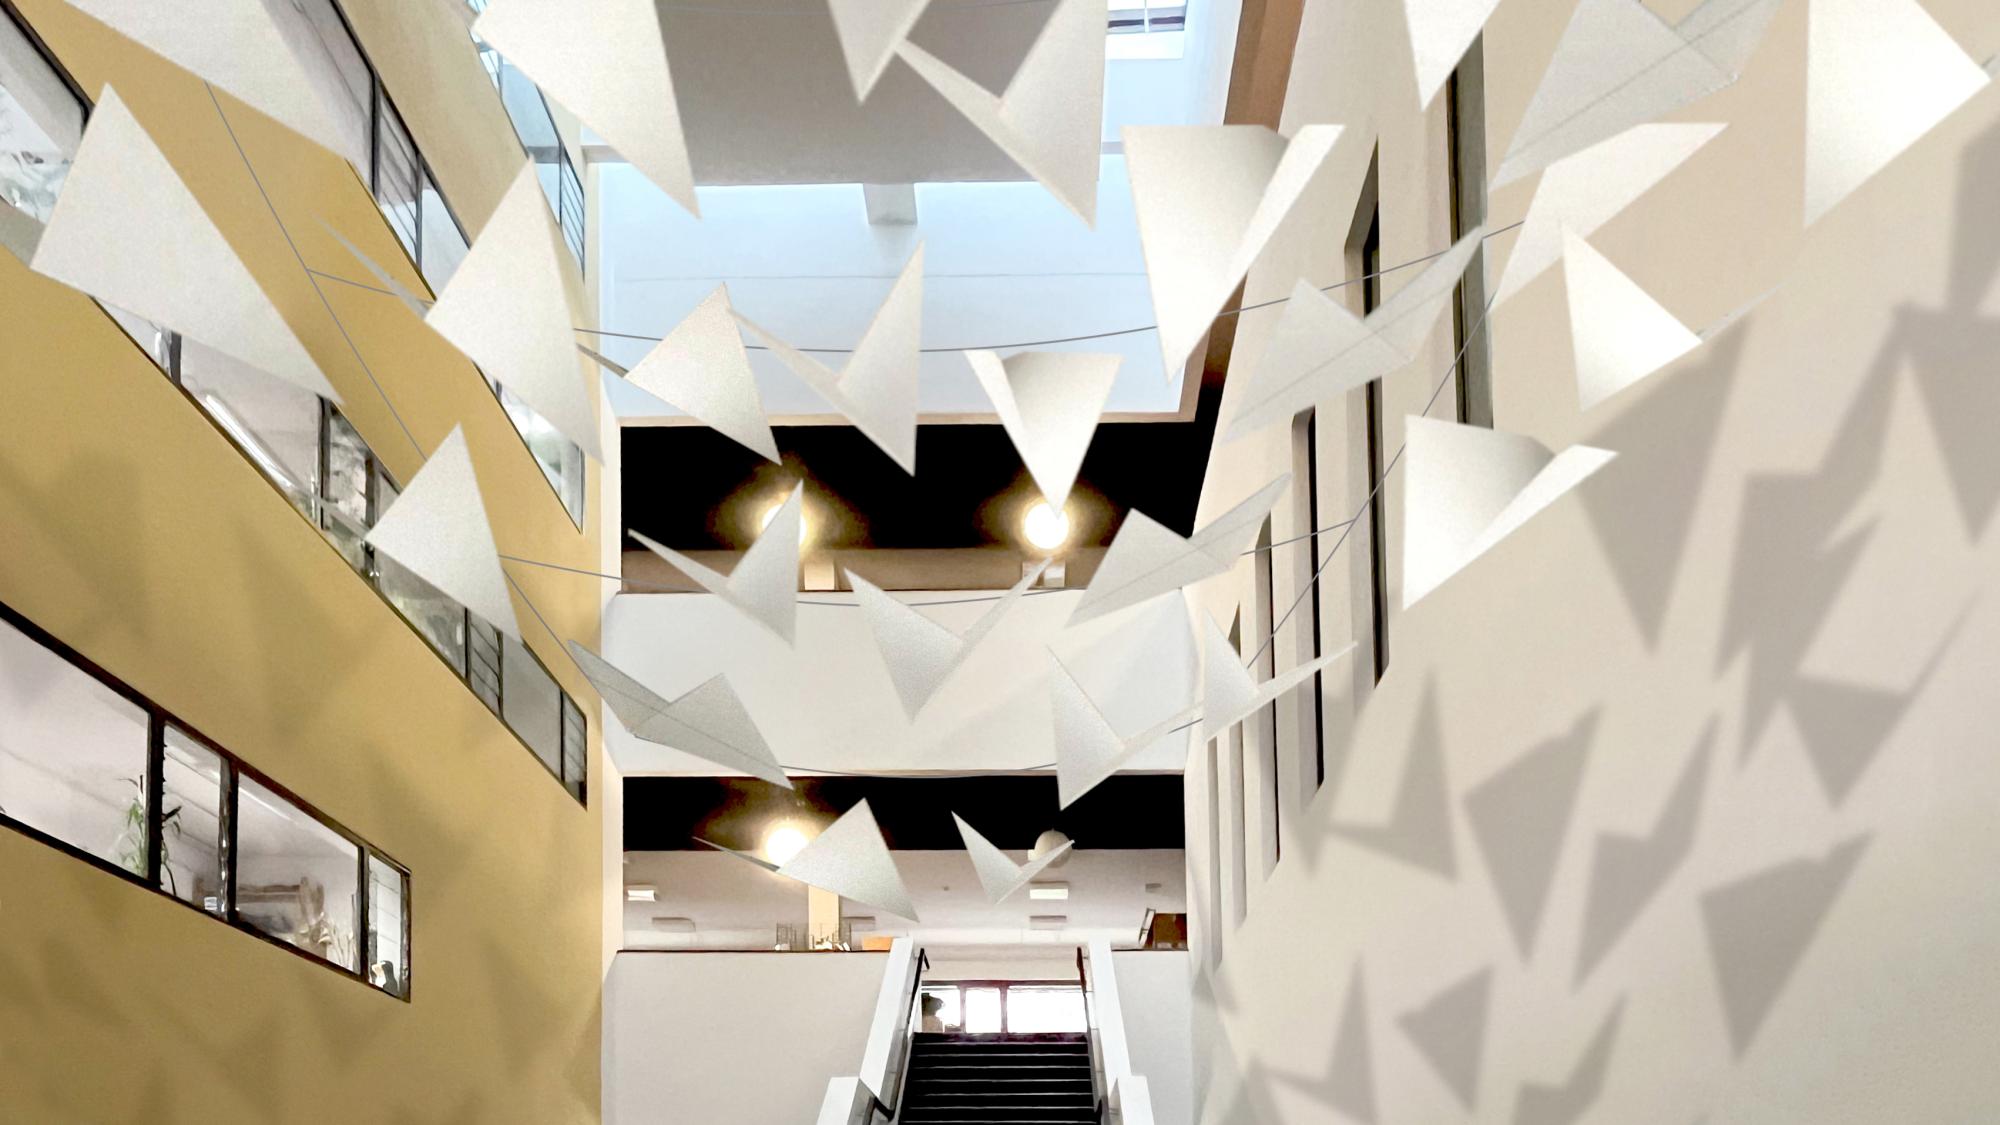 Treppe in der Bibliothek mit darber h?ngenden Girlanden in geometrischen Formen, die einen Schatten an die Wand werfen